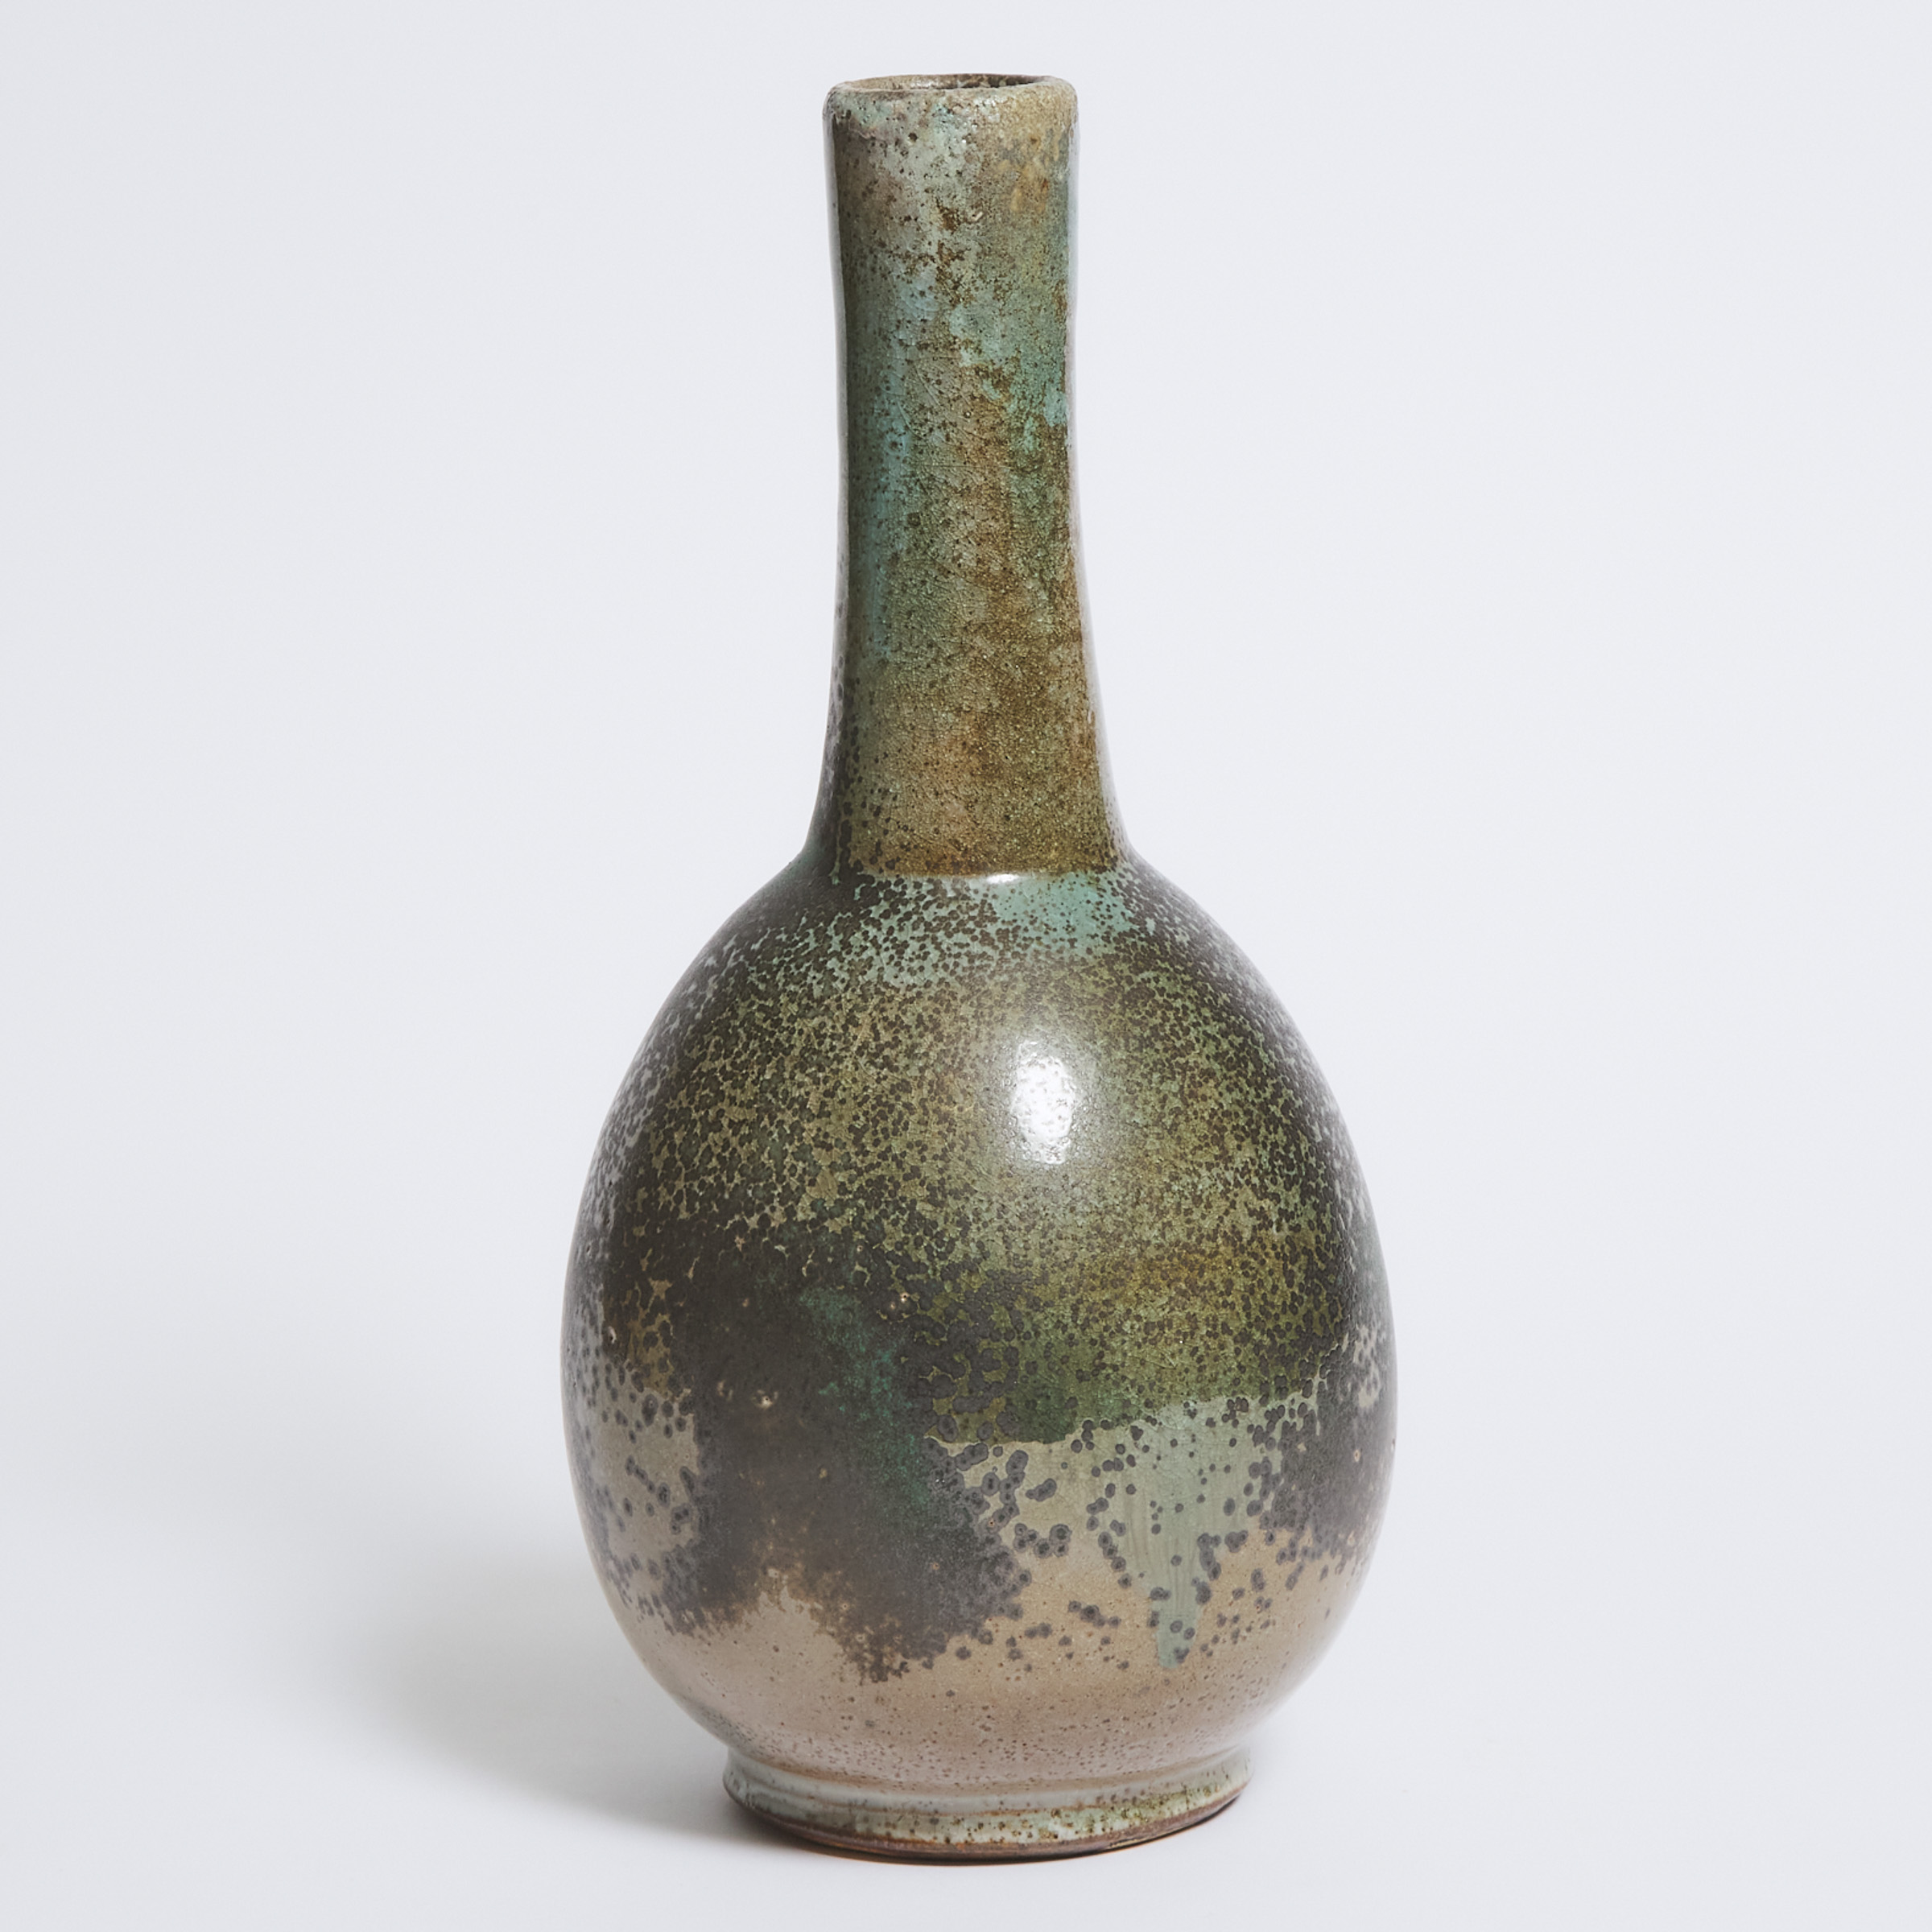 Robert Archambeau (Canadian, 1933-2022), Glazed Stoneware Vase, c.2000